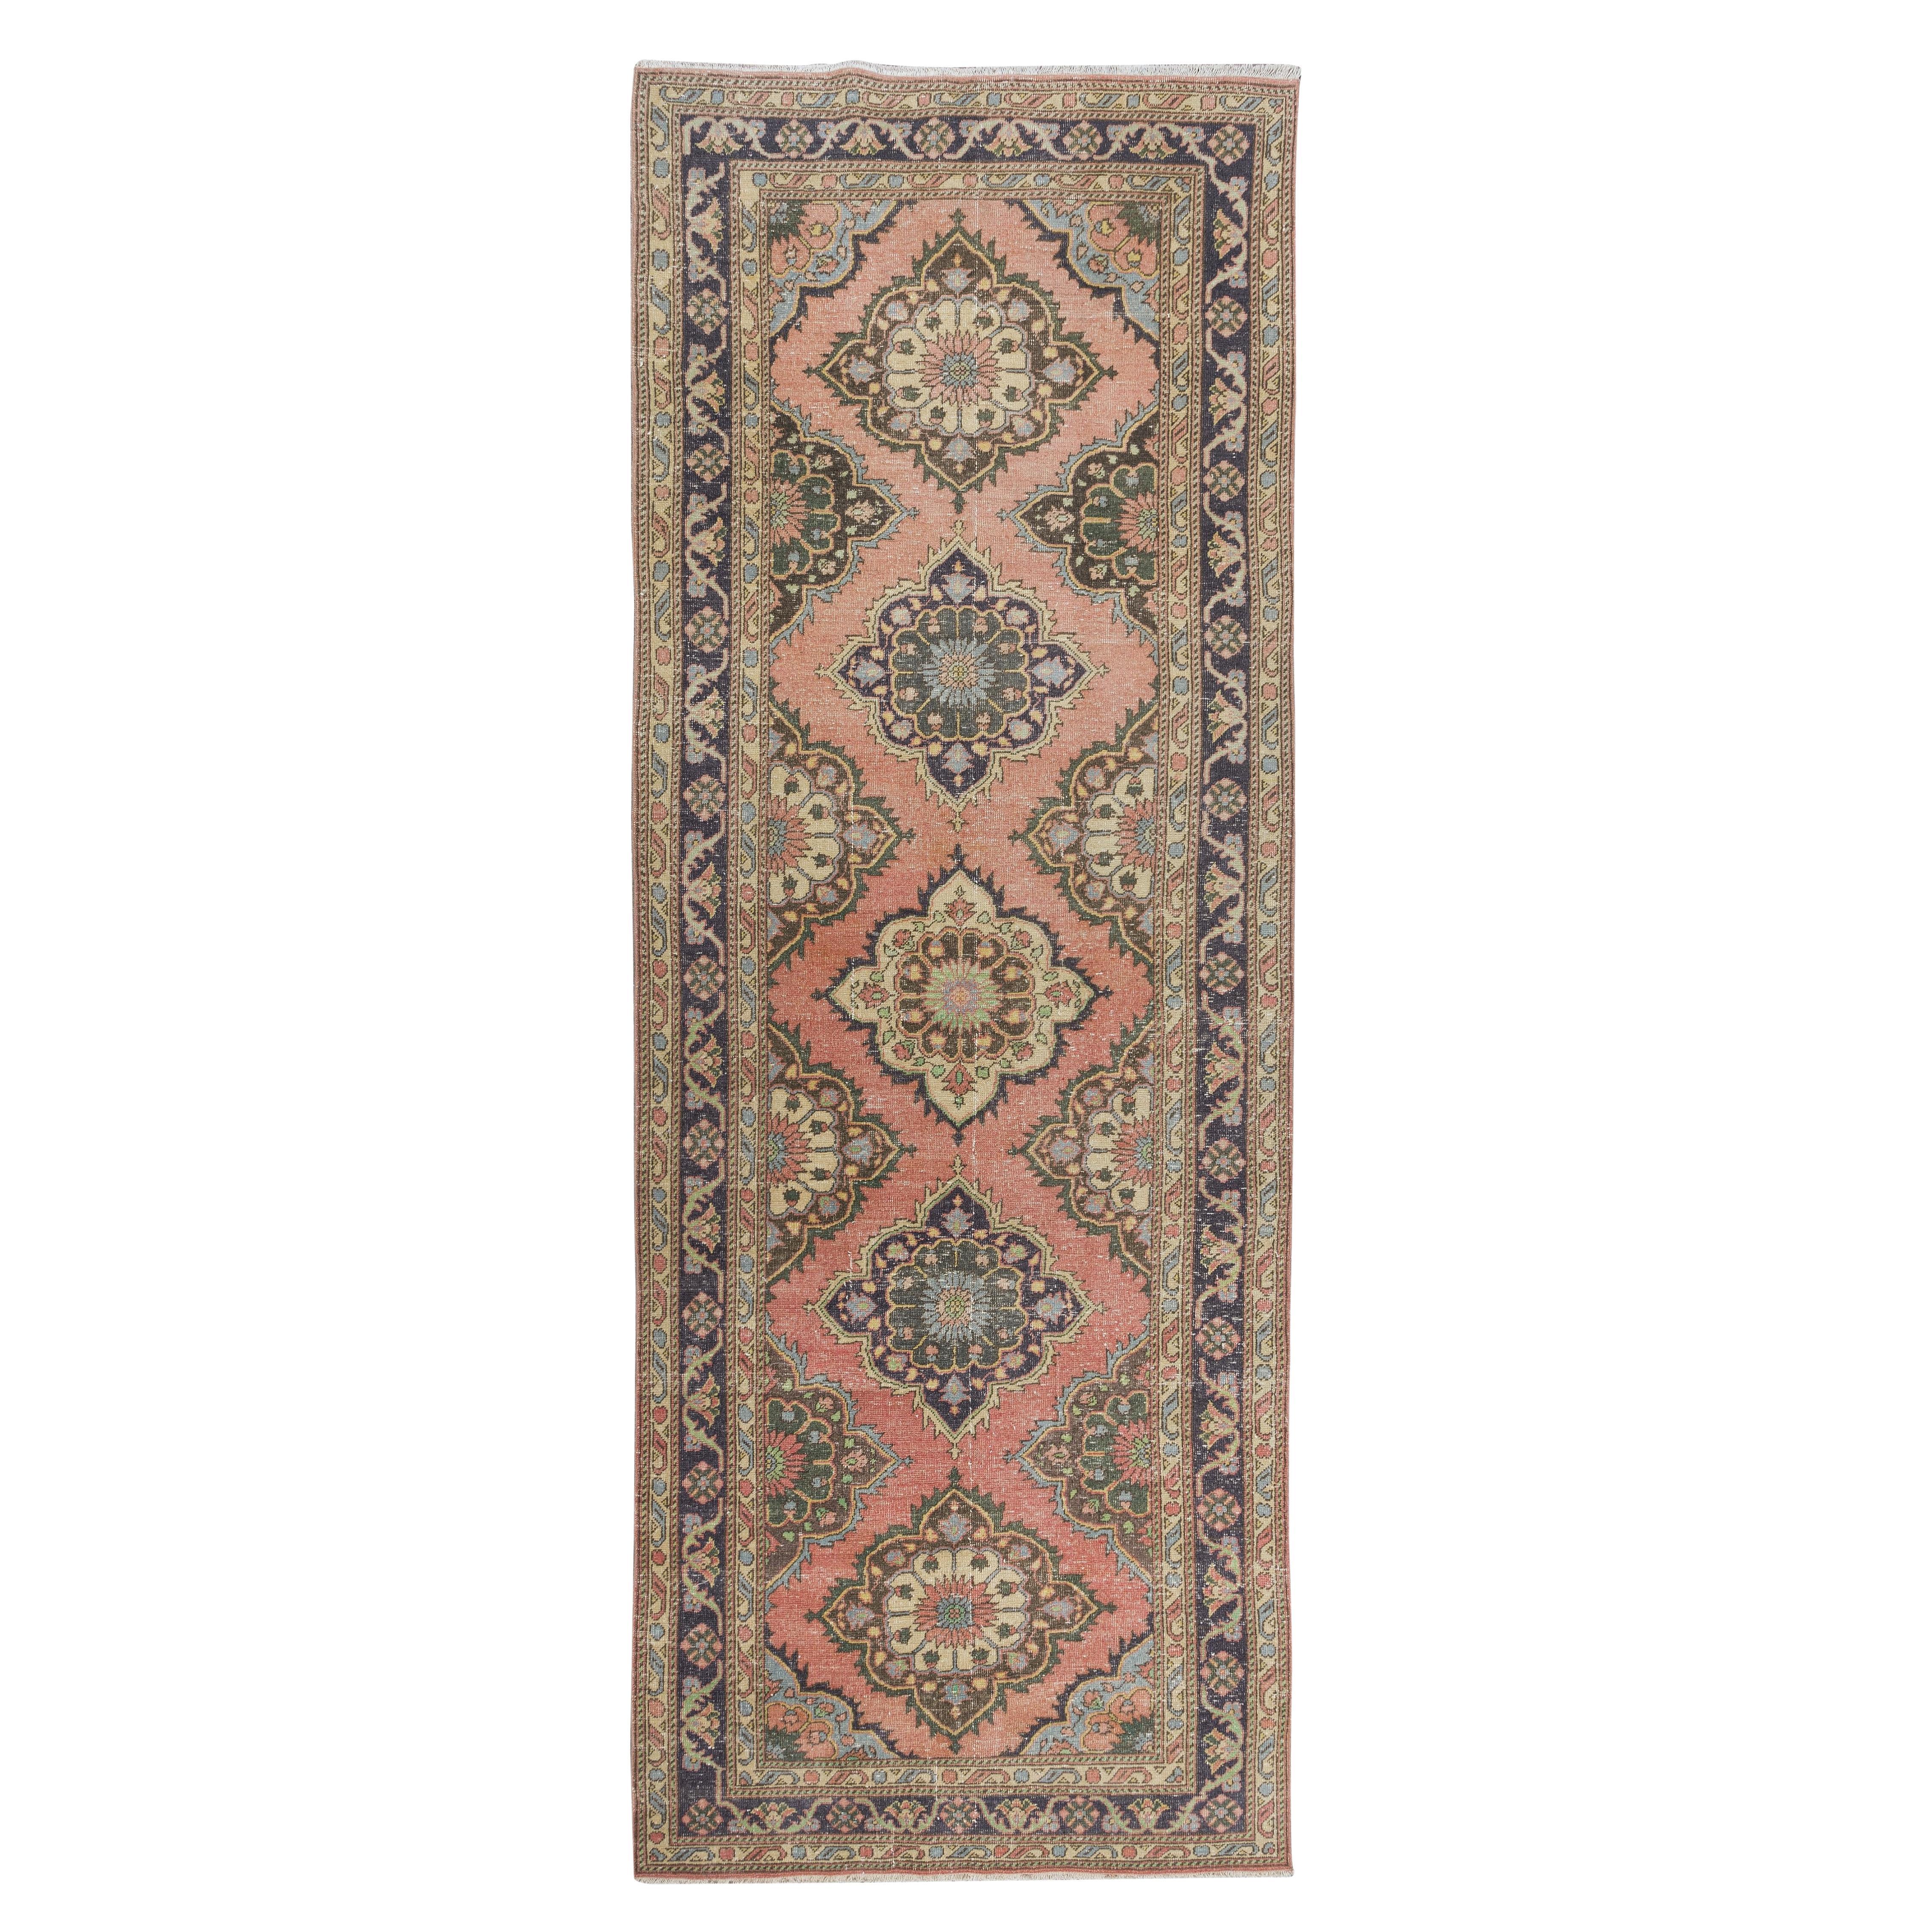 4.8x13 Ft Traditionelle Vintage Handmade Türkische Wolle Läufer Teppich für Flur